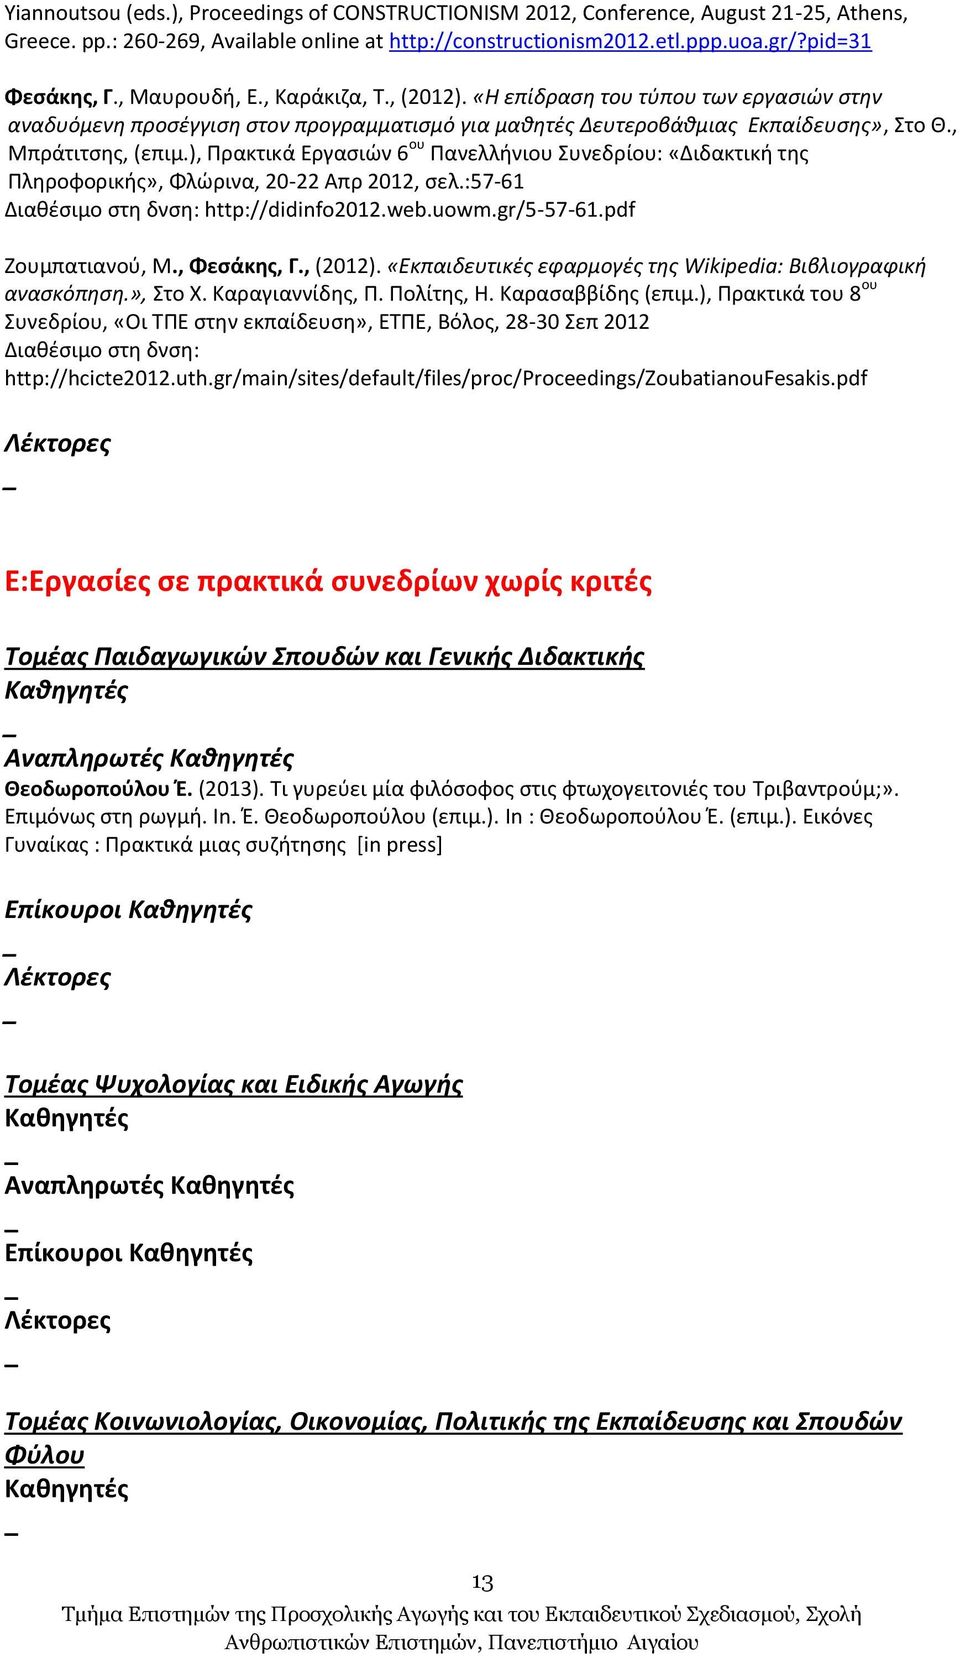 ), Πρακτικά Εργασιών 6 ου Πανελλήνιου Συνεδρίου: «Διδακτική της Πληροφορικής», Φλώρινα, 20-22 Απρ 2012, σελ.:57-61 Διαθέσιμο στη δνση: http://didinfo2012.web.uowm.gr/5-57-61.pdf Ζουμπατιανού, Μ.